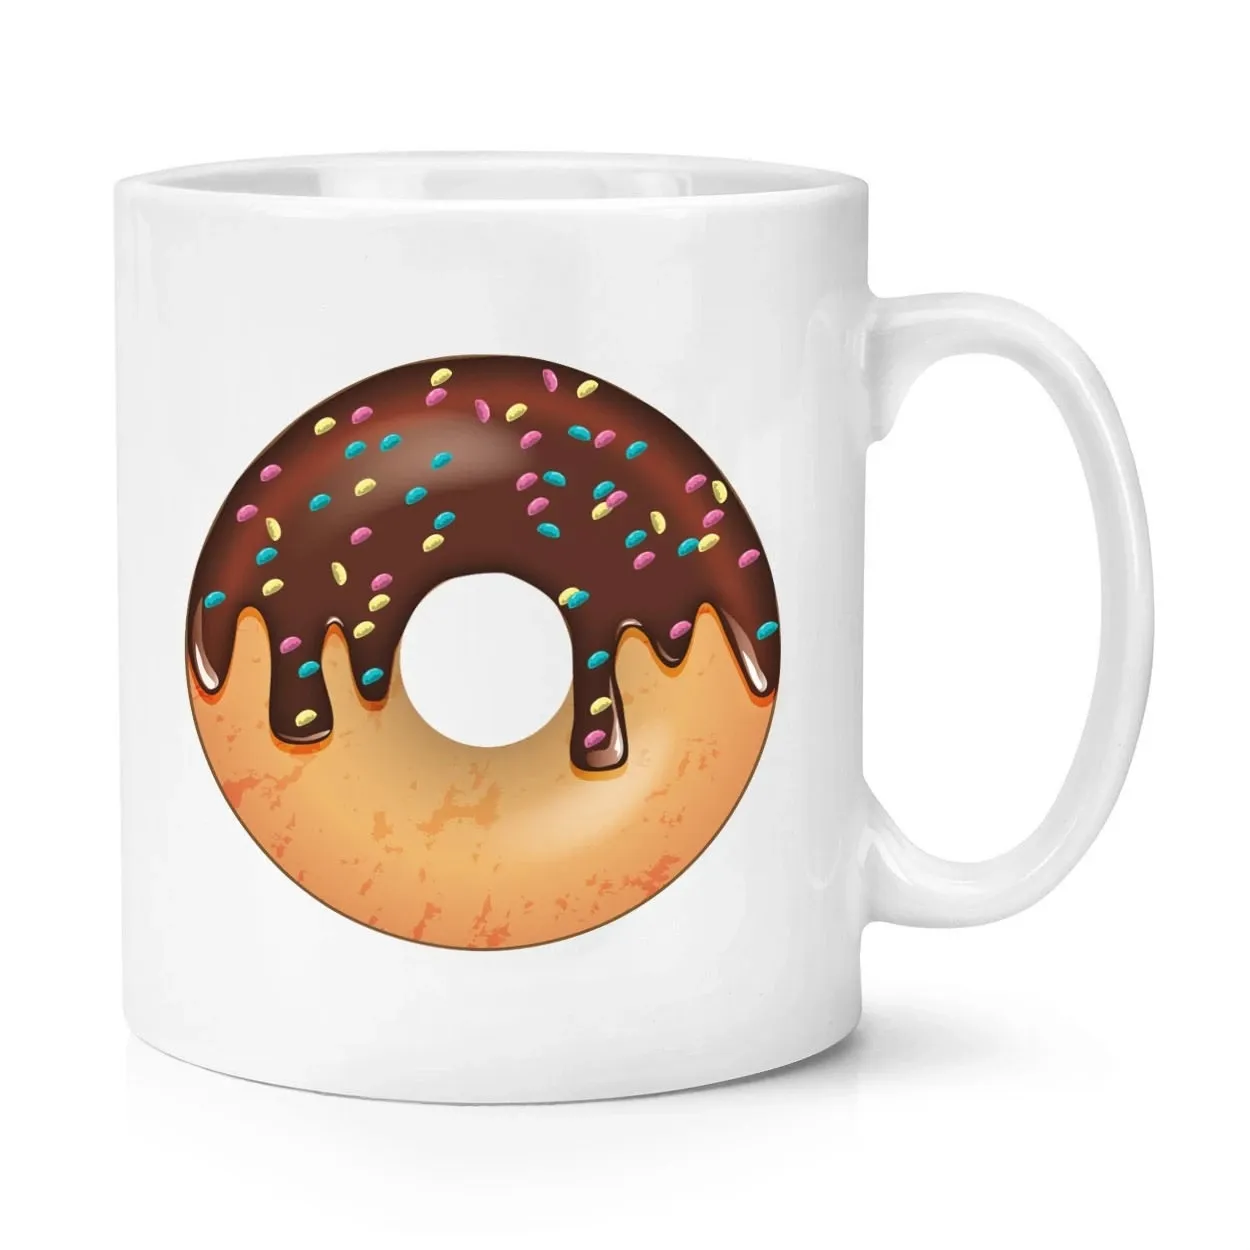 Special coffee mugs ceramic donut mug